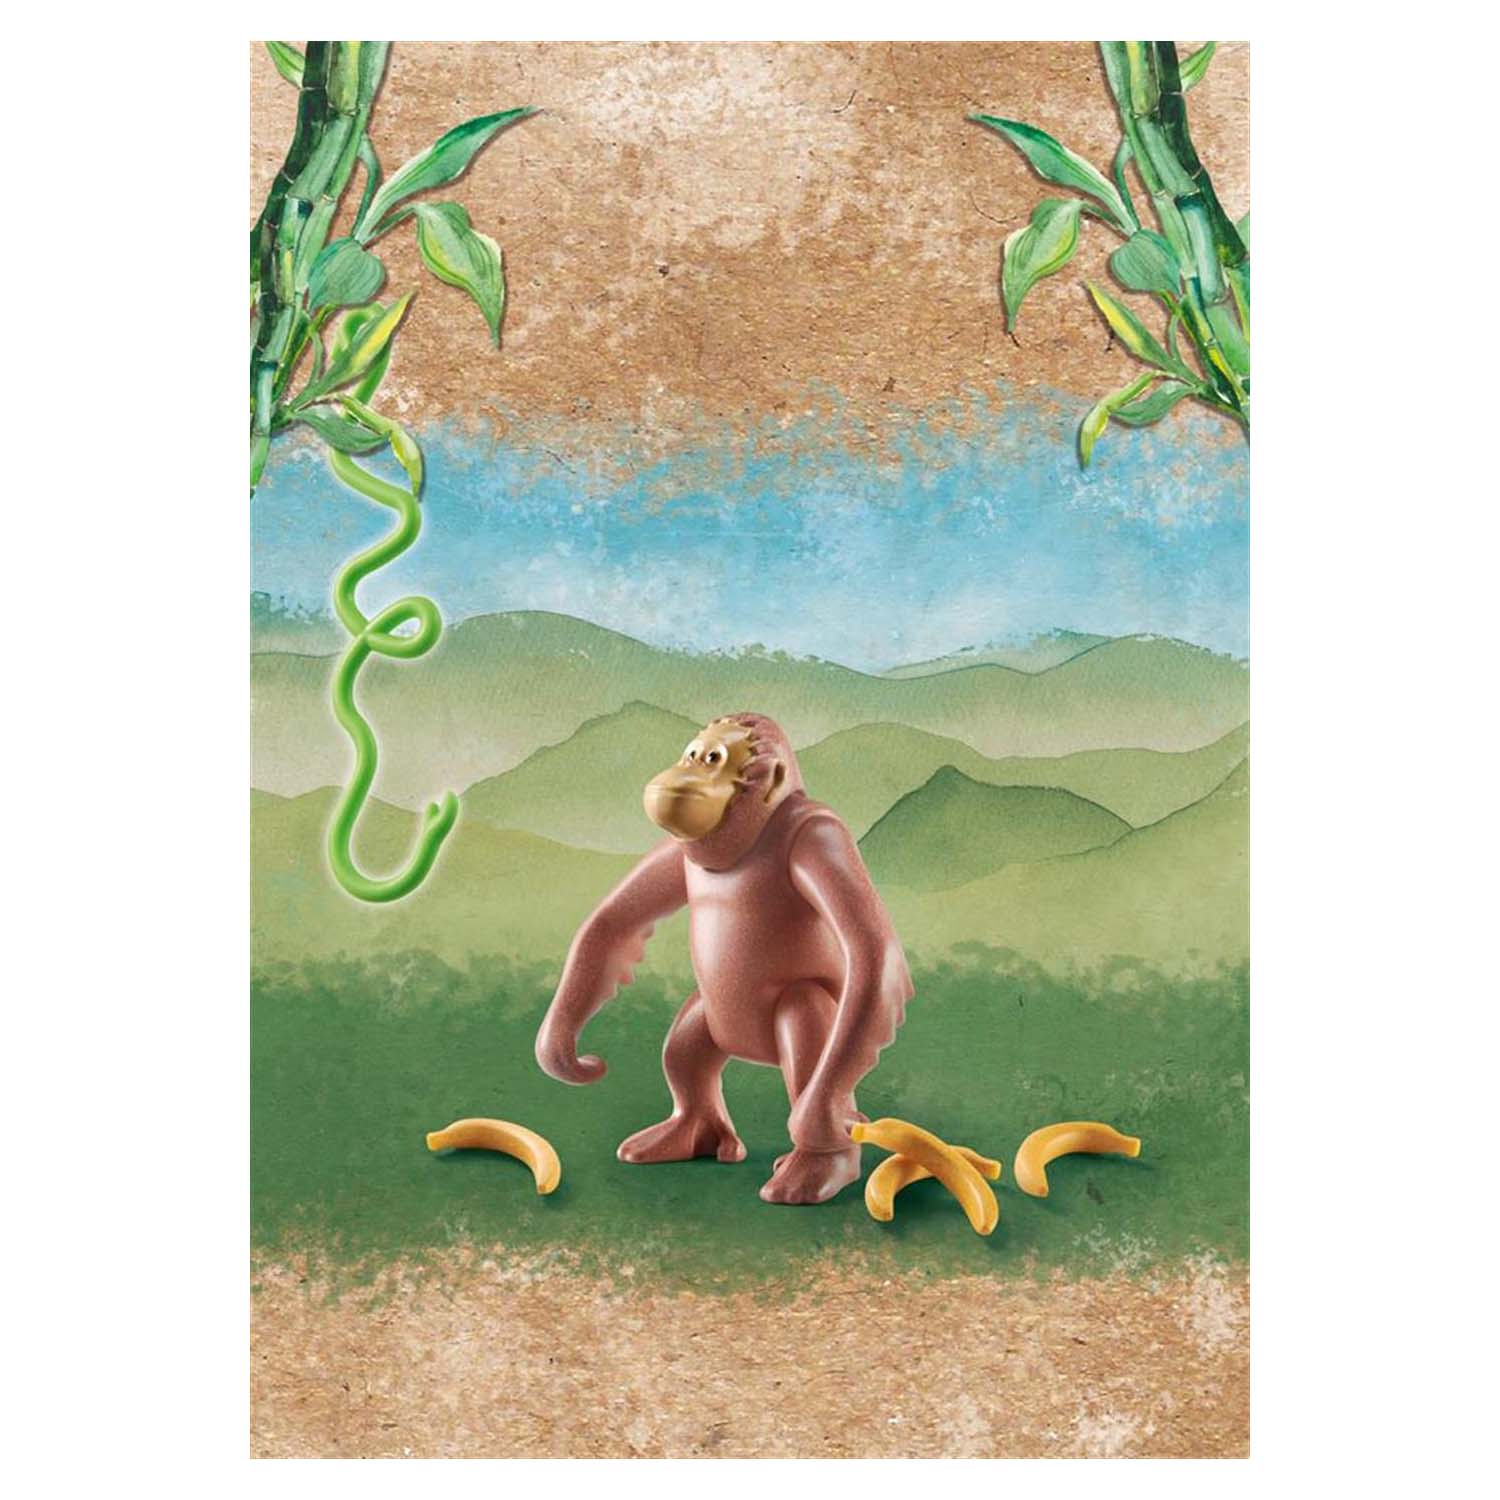 relief Genre inflation Playmobil Wiltopia Orangutan Monkey Figure